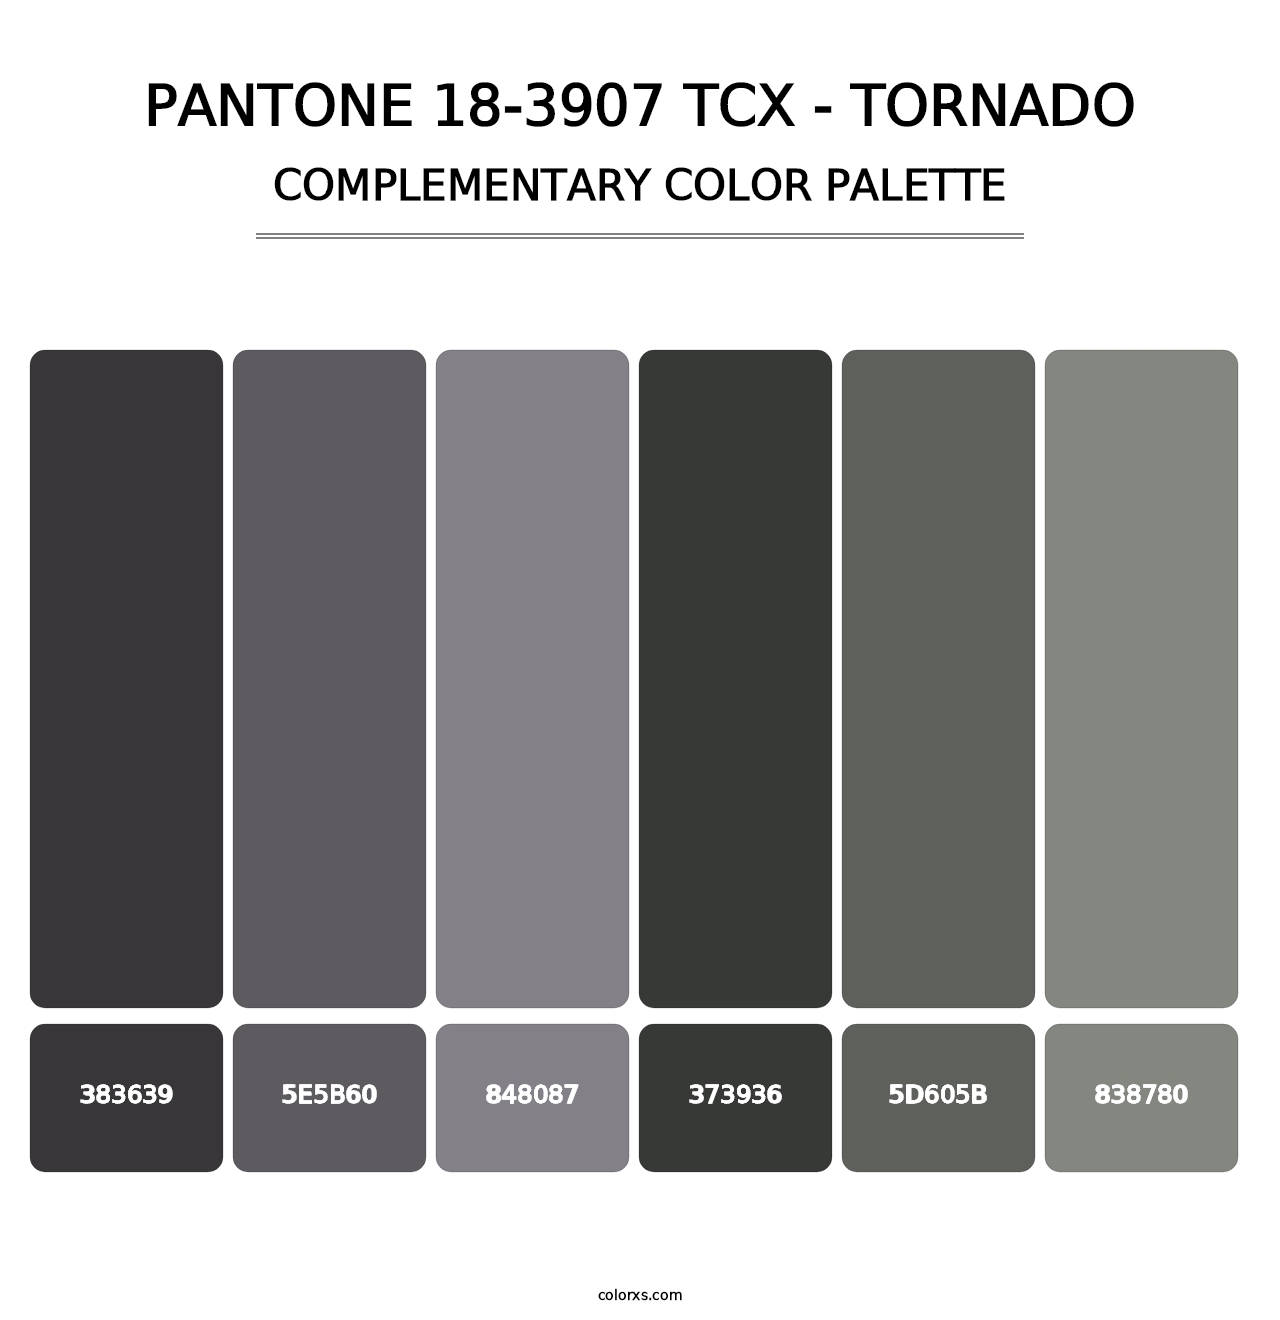 PANTONE 18-3907 TCX - Tornado - Complementary Color Palette